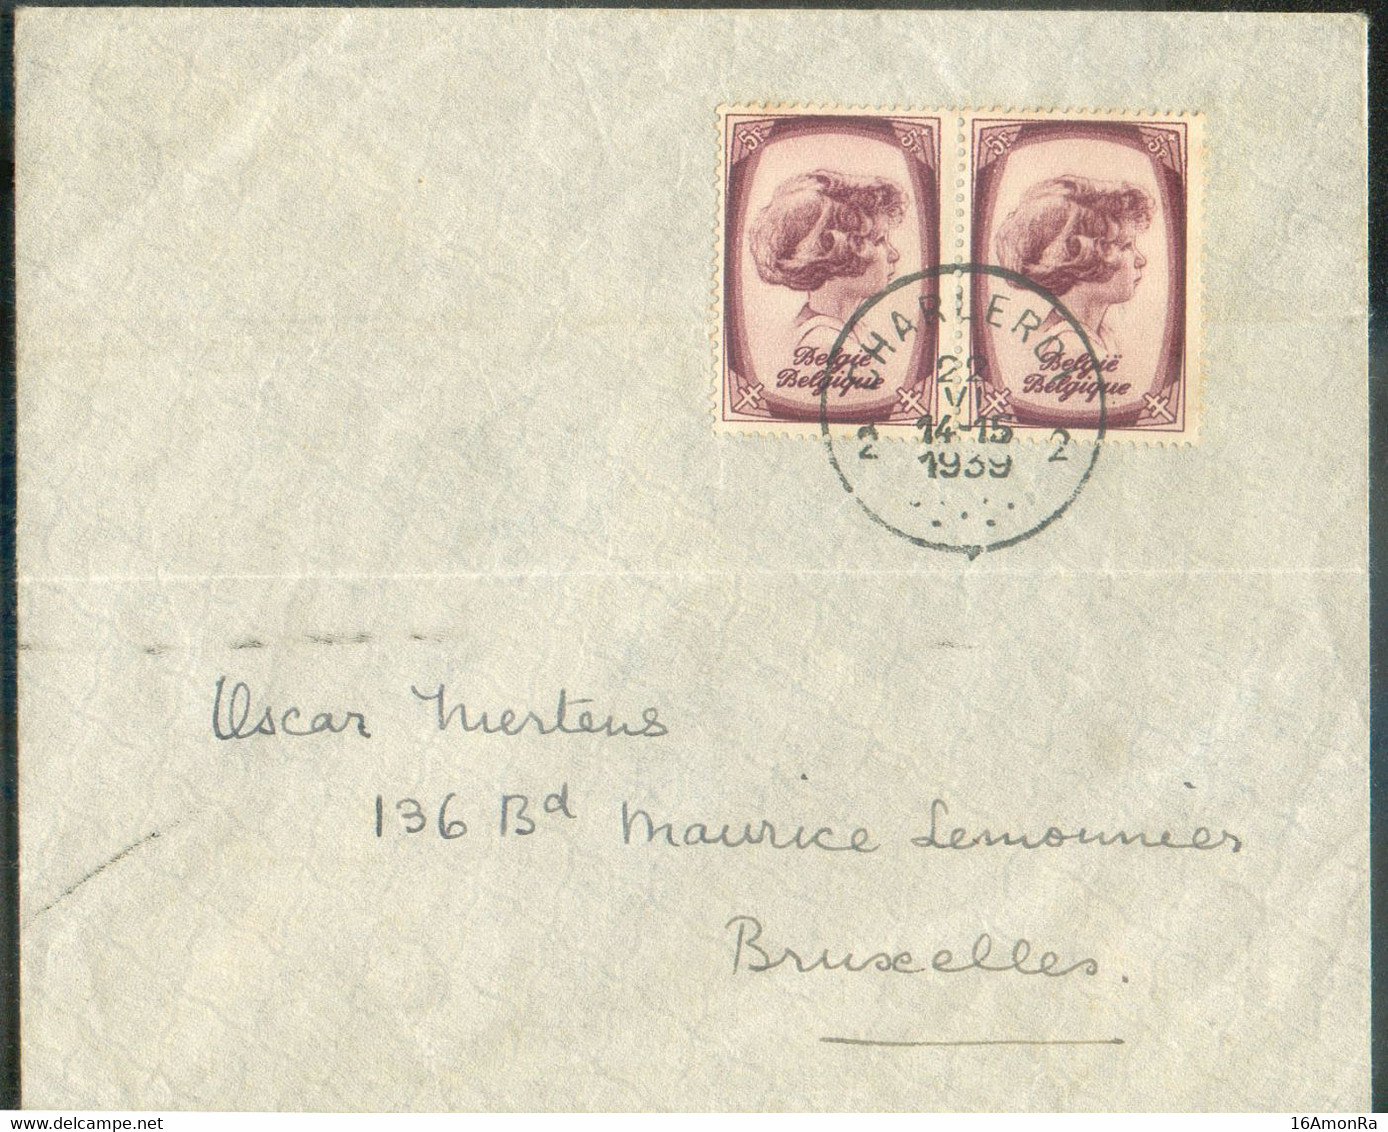 N°495(2) - 5Fr. PRINCE ALBERT (paire) Obl. Sc CHARLEROI 2 sur Enveloppe Du 22-VI-1939 Vers Bruxelles. - TB - 20425 - Cartas & Documentos